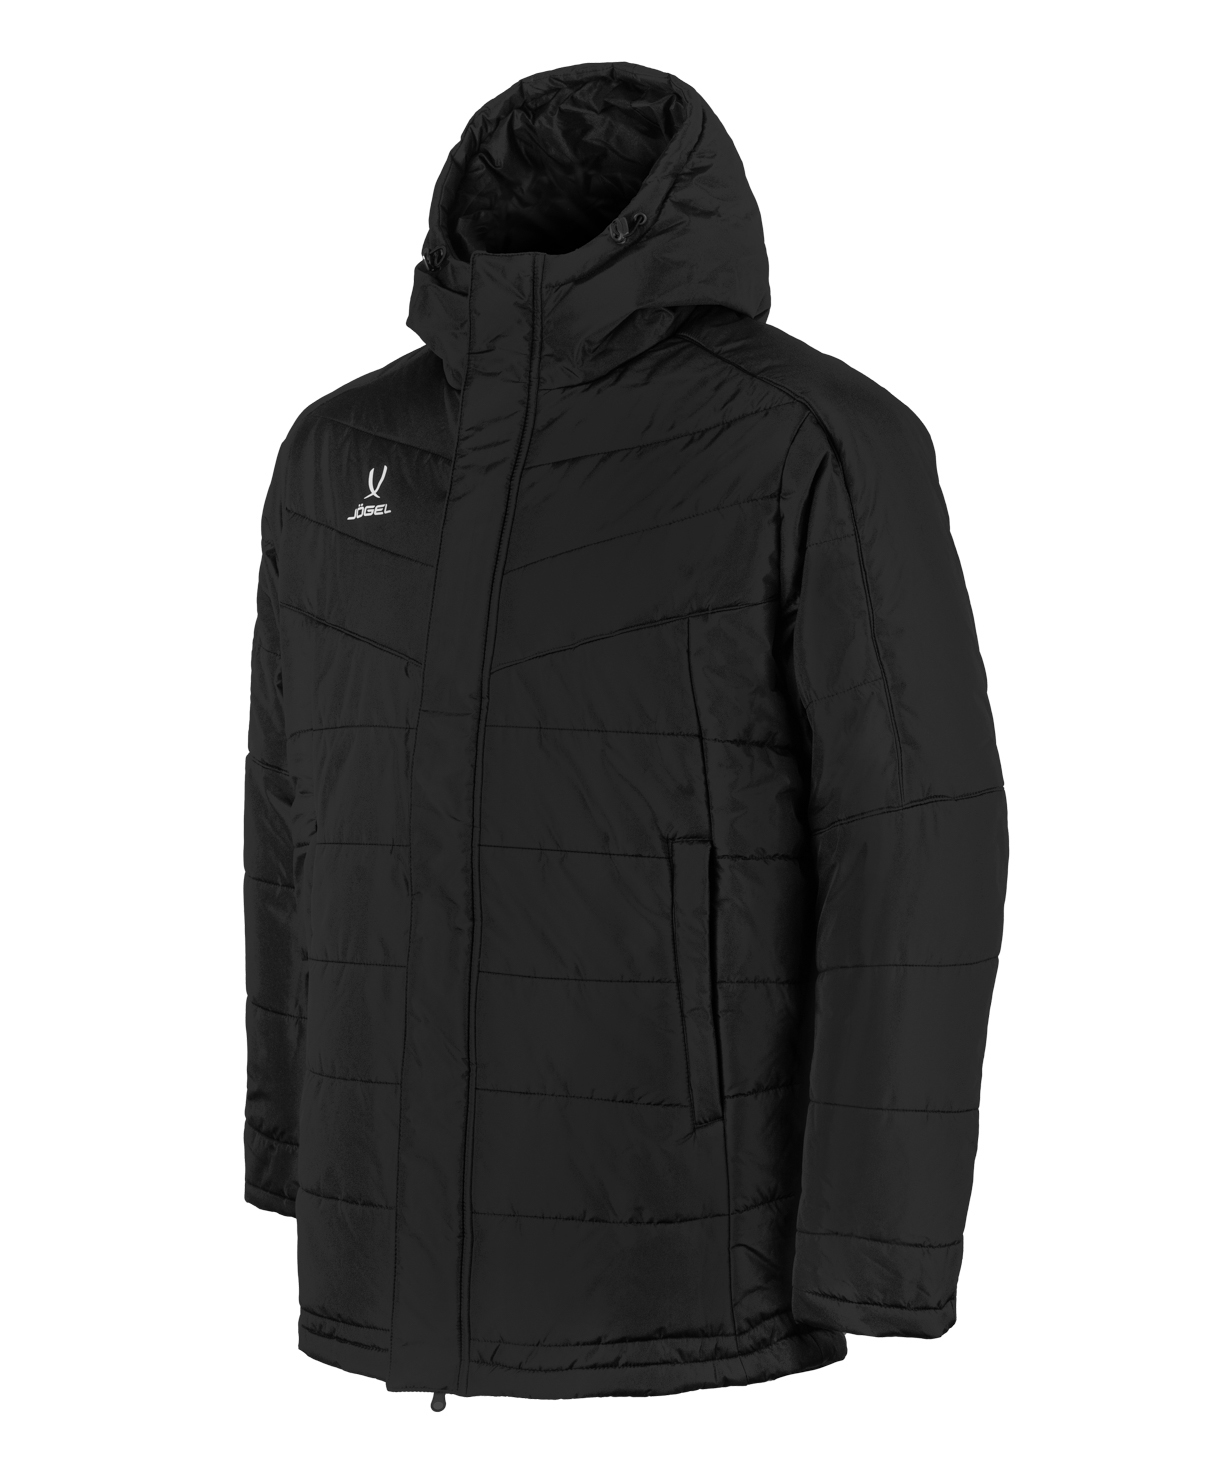 Куртка мужская Jogel CAMP Padded Jacket черная L